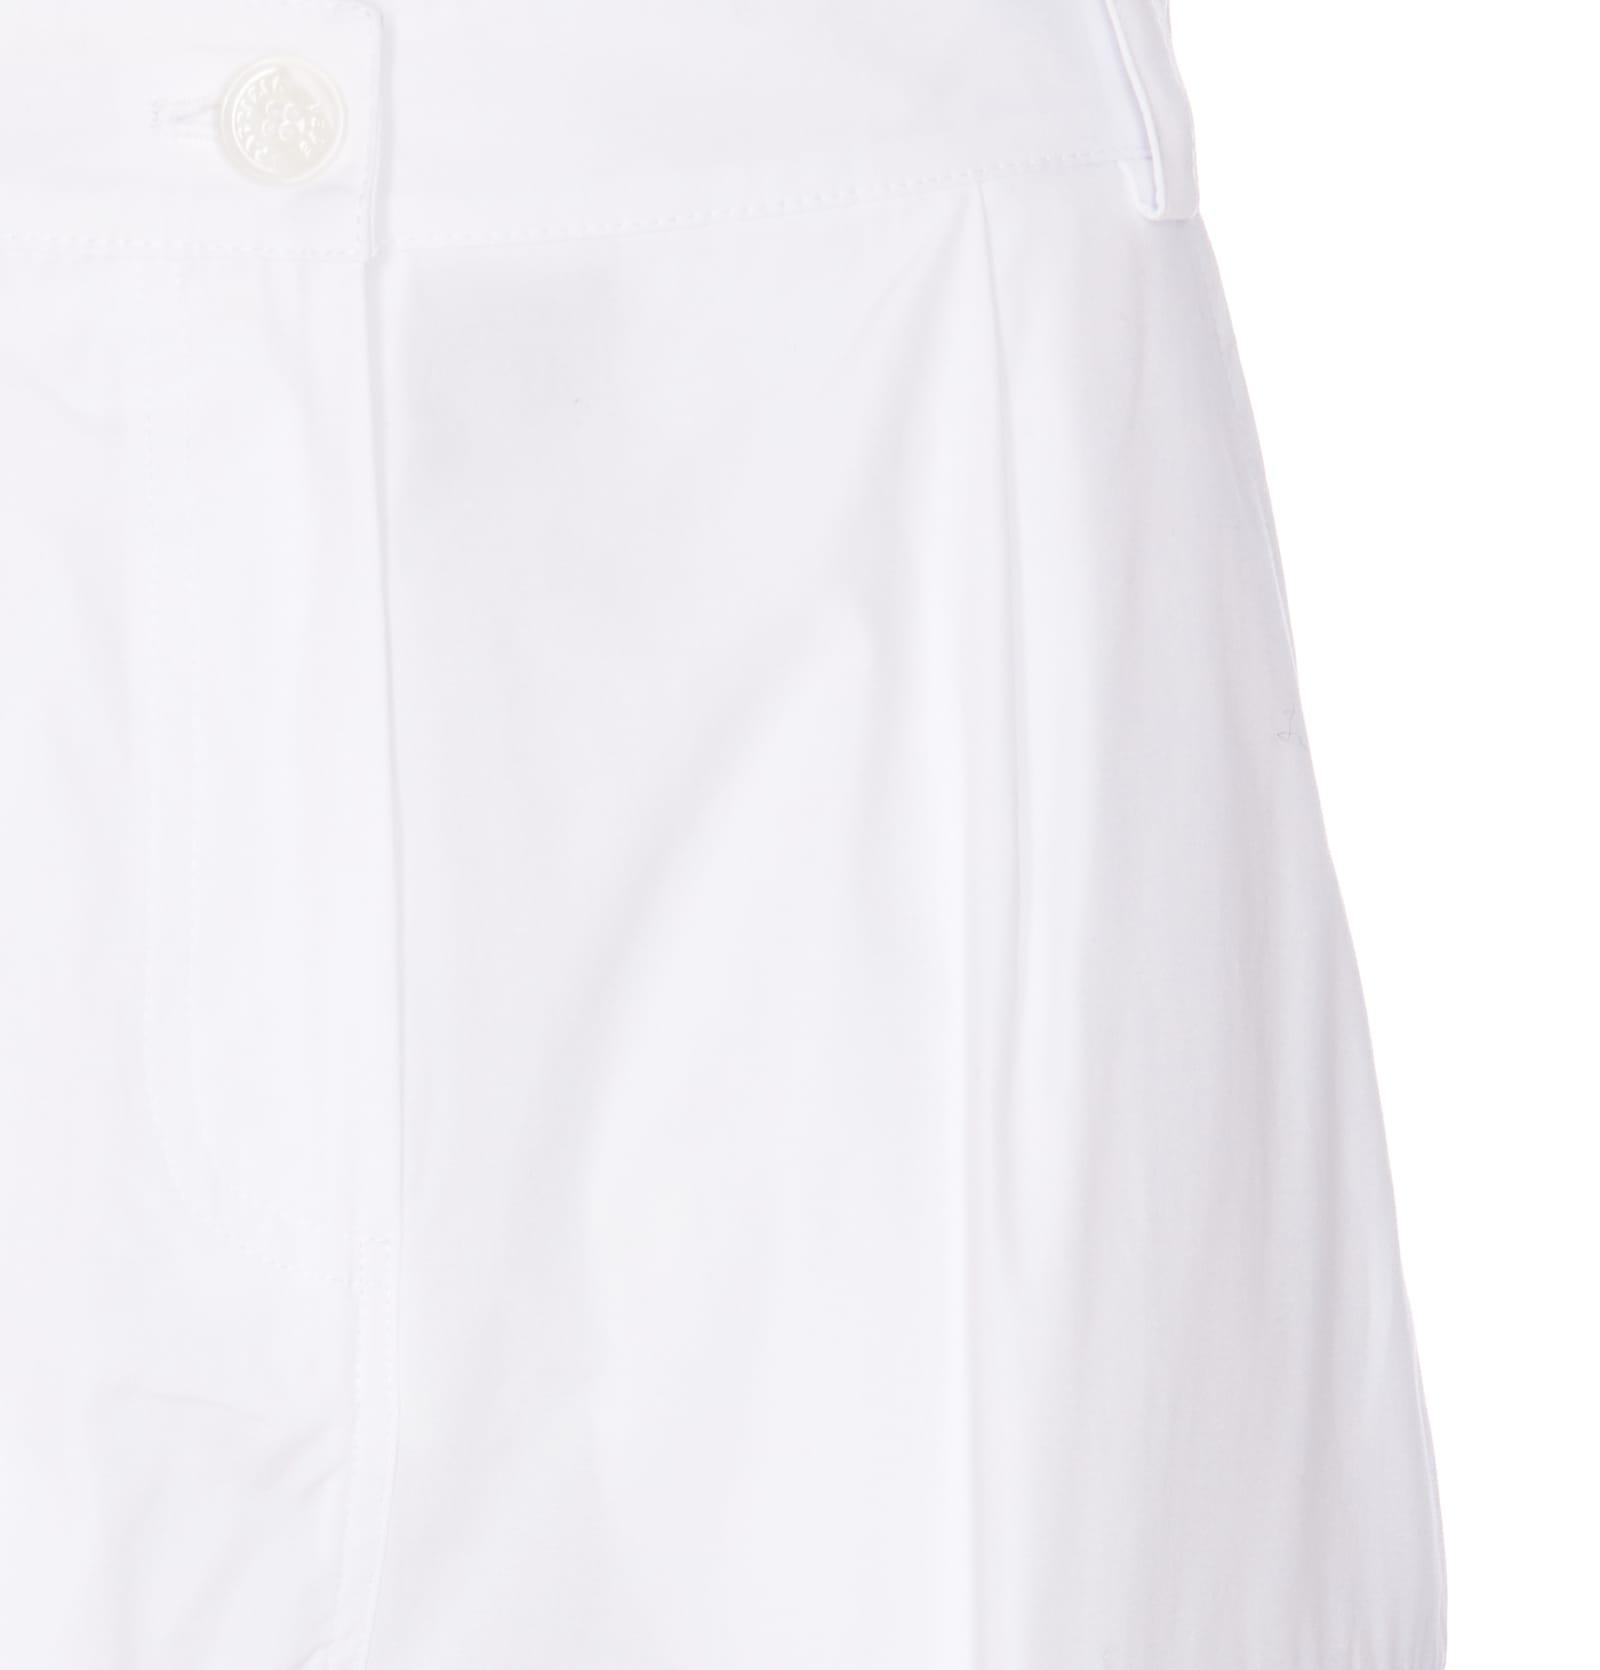 Shop Patrizia Pepe Logo Pants In White